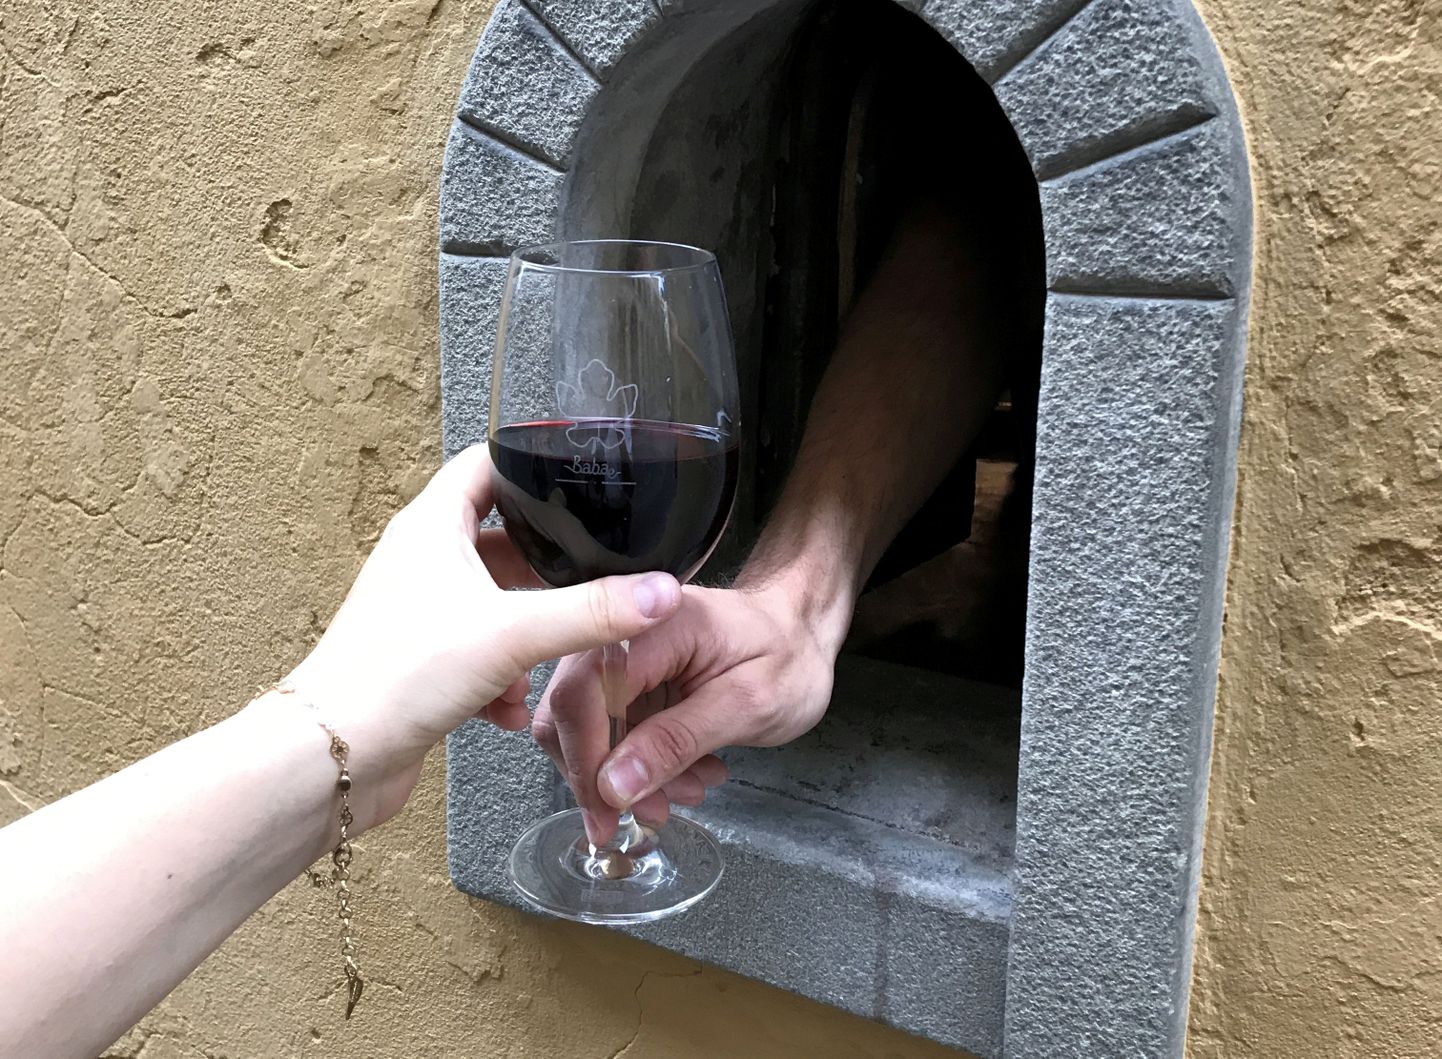 Veiniaken Babae restoranis Firenzes. Ajaloolised augud seinas teenisid kliente 1630. aastate katkupuhangu ajal ning hiljemgi, kuid vajusid aega mööda unustusse. Koroonaviiruse pandeemia on Toscana veiniakendele andnud uue elu.